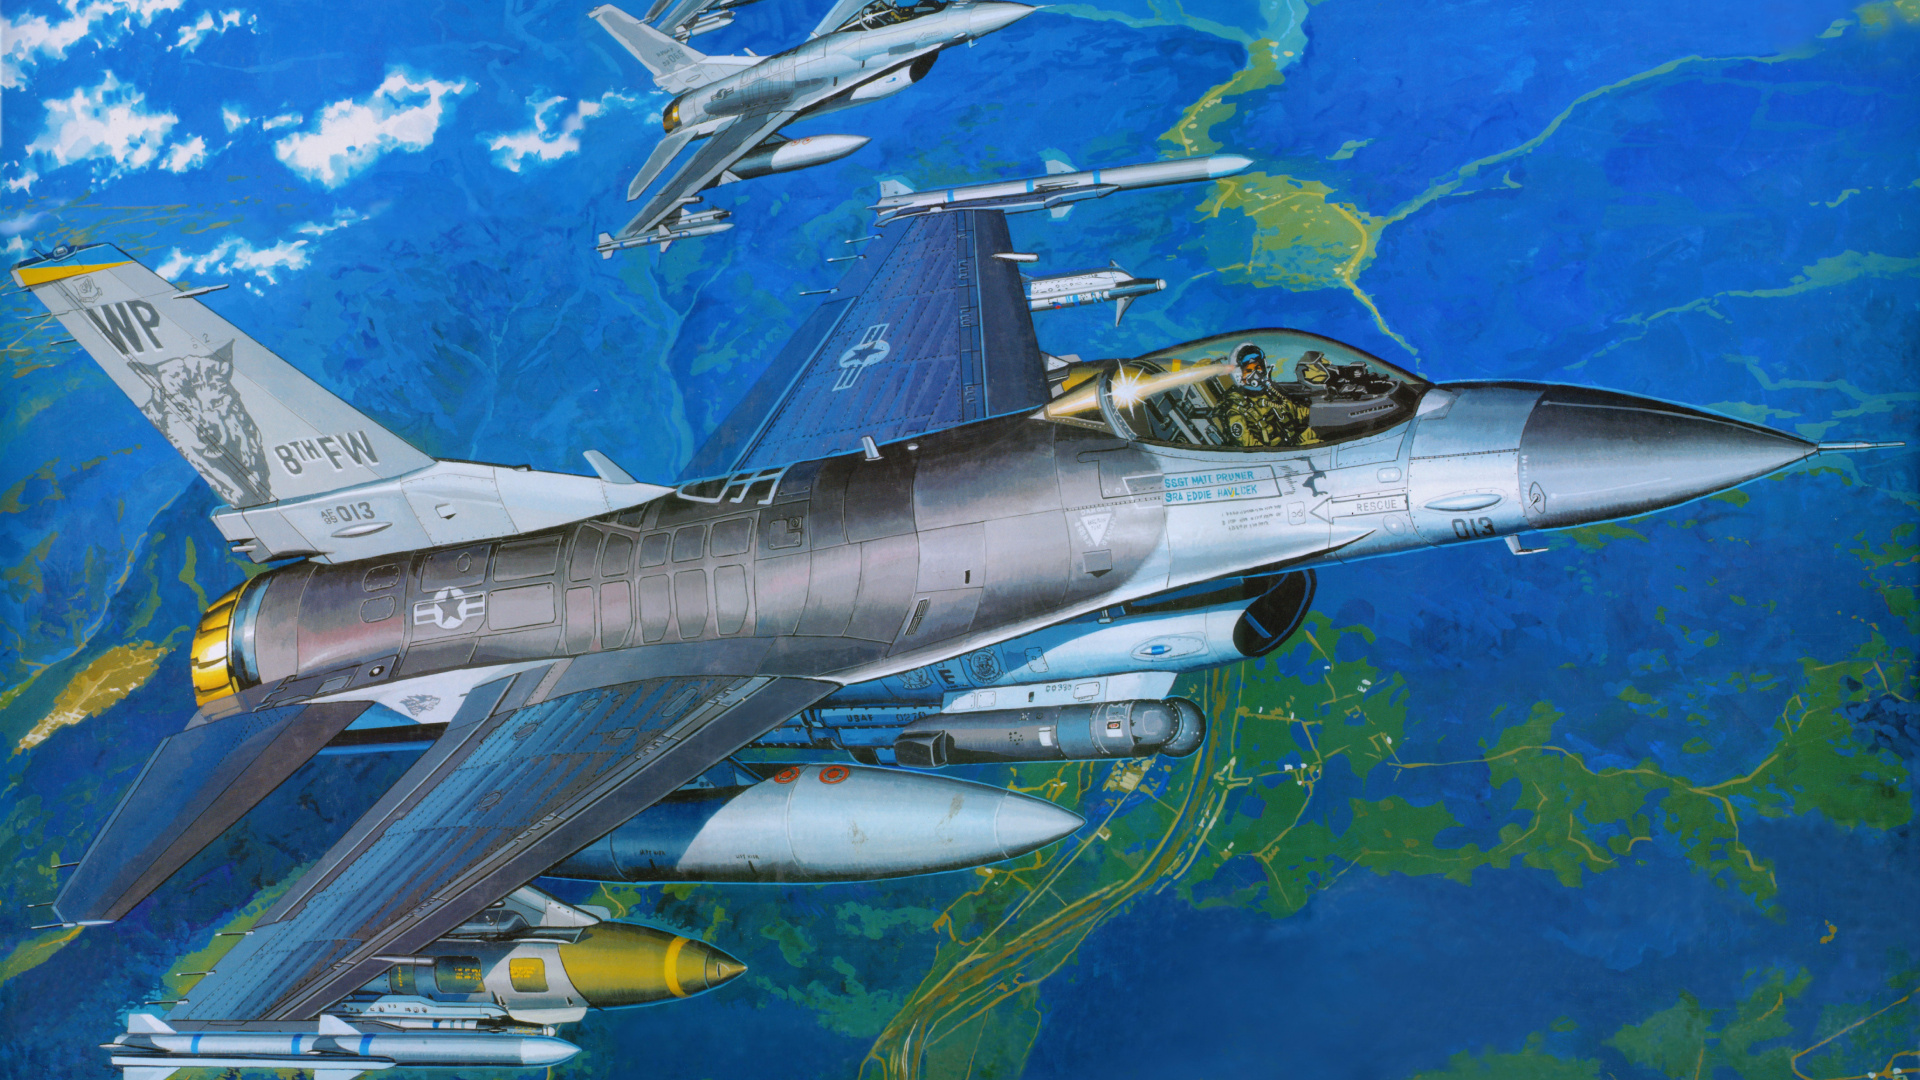 塑料模型, 航空, 空军, 军用飞机, 喷气式飞机 壁纸 1920x1080 允许